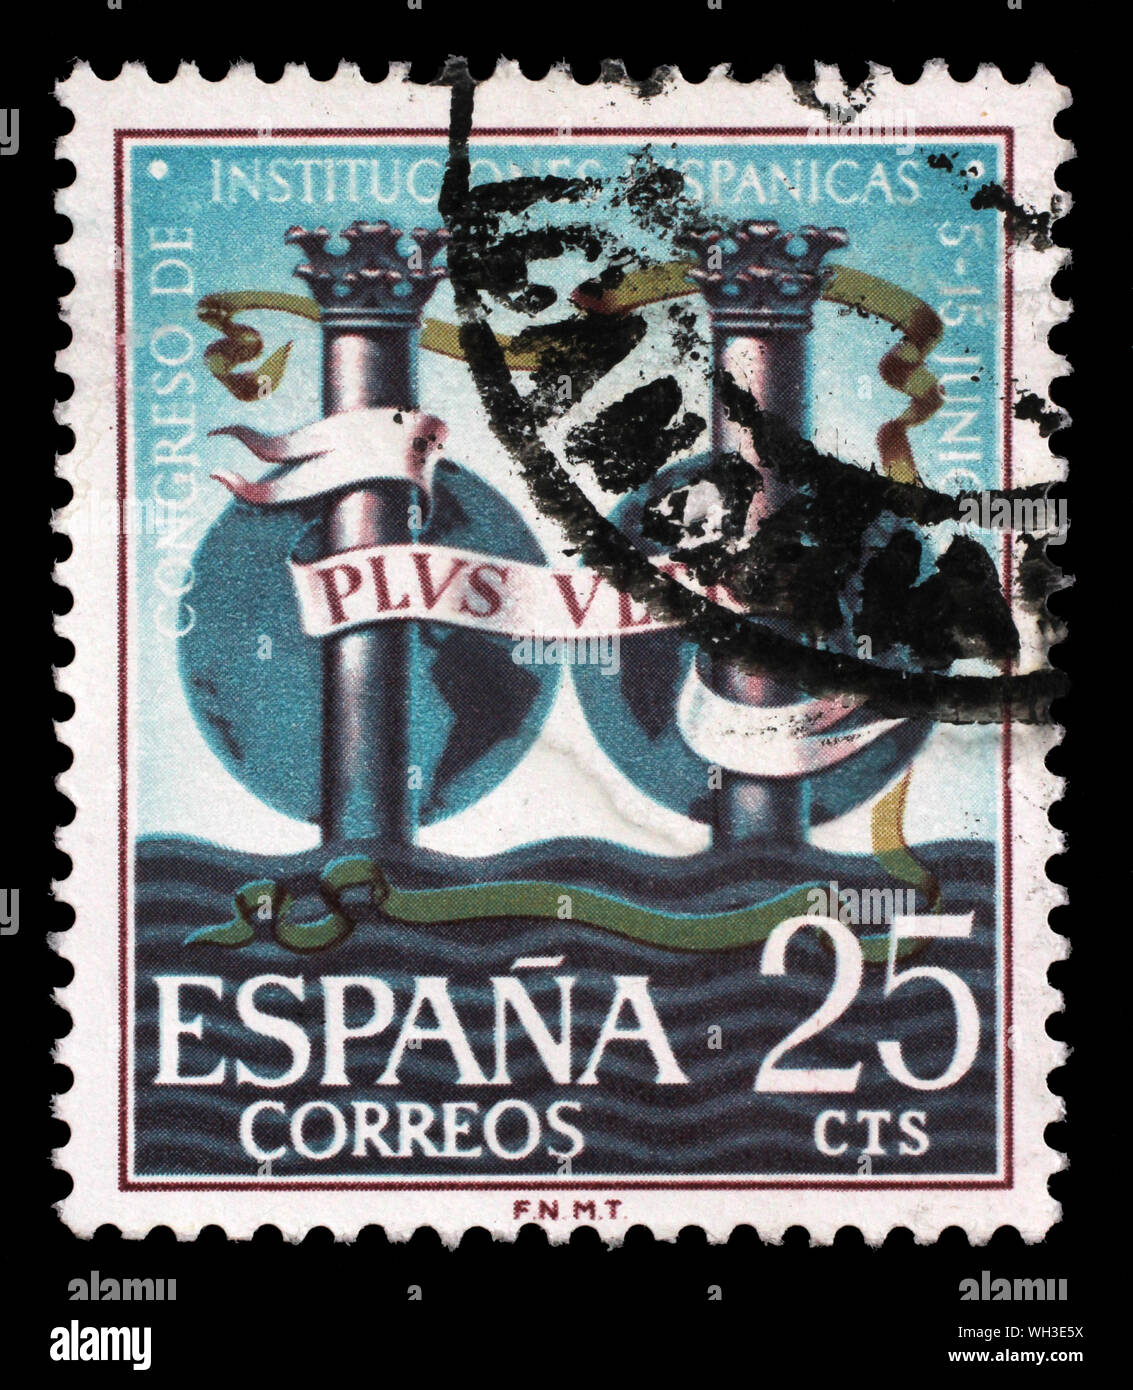 Stempel in Spanien entnommen wurde, wird der Kongress der hispanischen Institutionen, circa 1963. Stockfoto